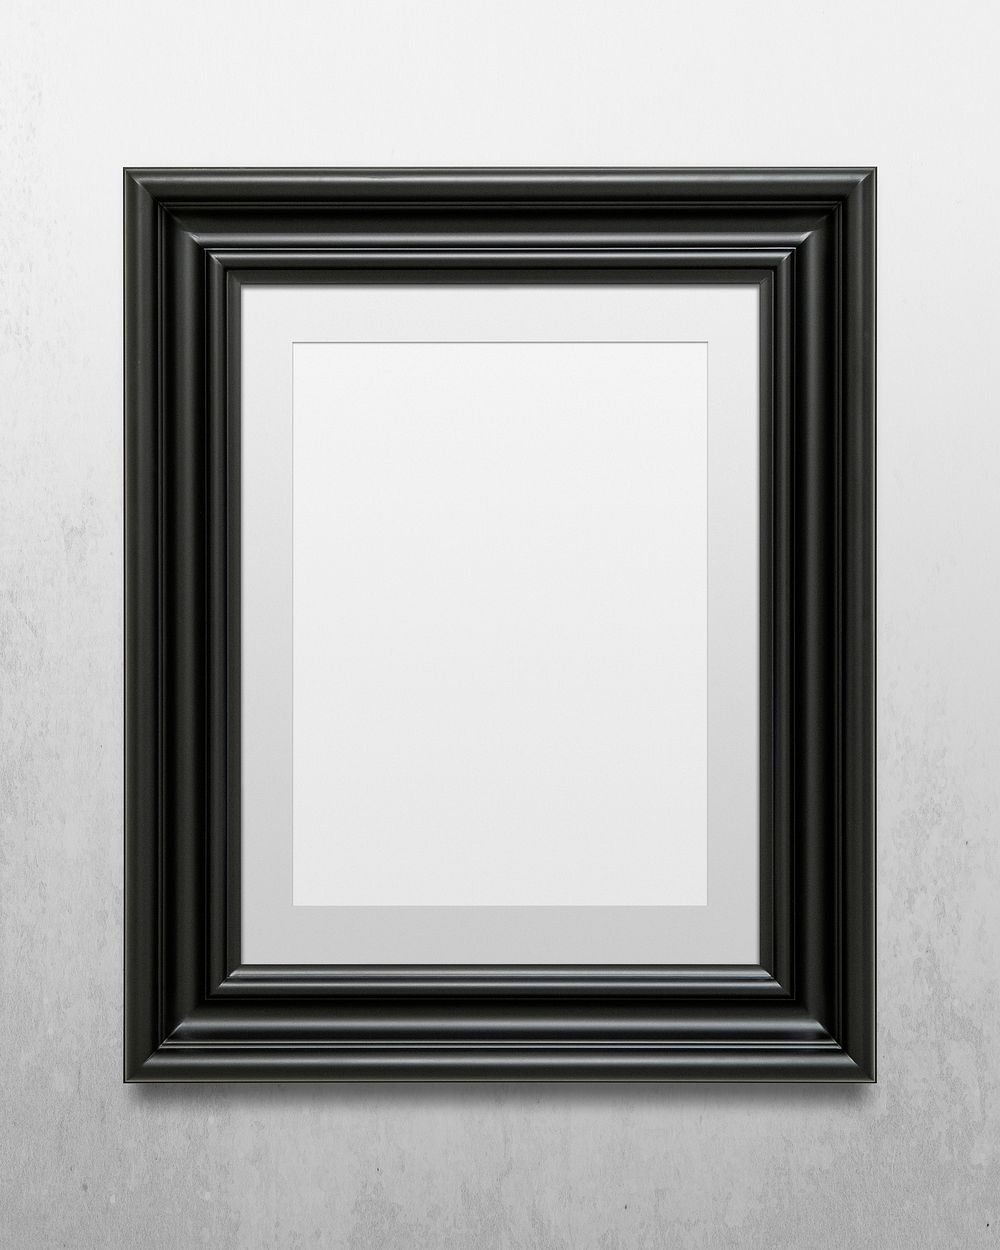 Black picture frame mockup illustration